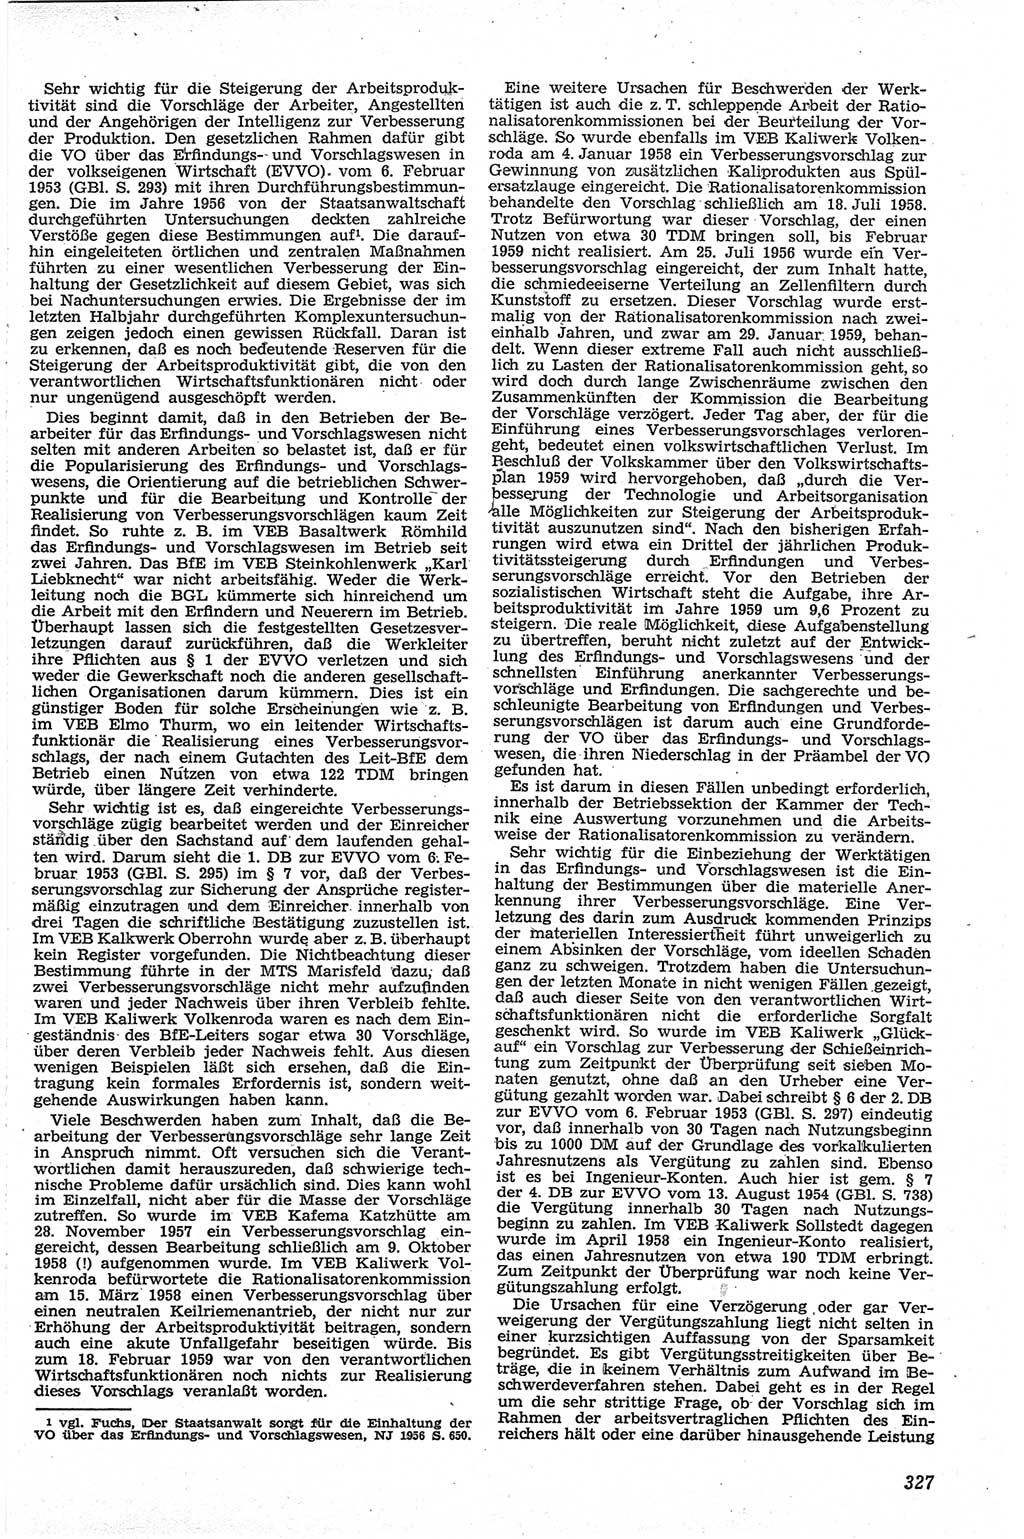 Neue Justiz (NJ), Zeitschrift für Recht und Rechtswissenschaft [Deutsche Demokratische Republik (DDR)], 13. Jahrgang 1959, Seite 327 (NJ DDR 1959, S. 327)